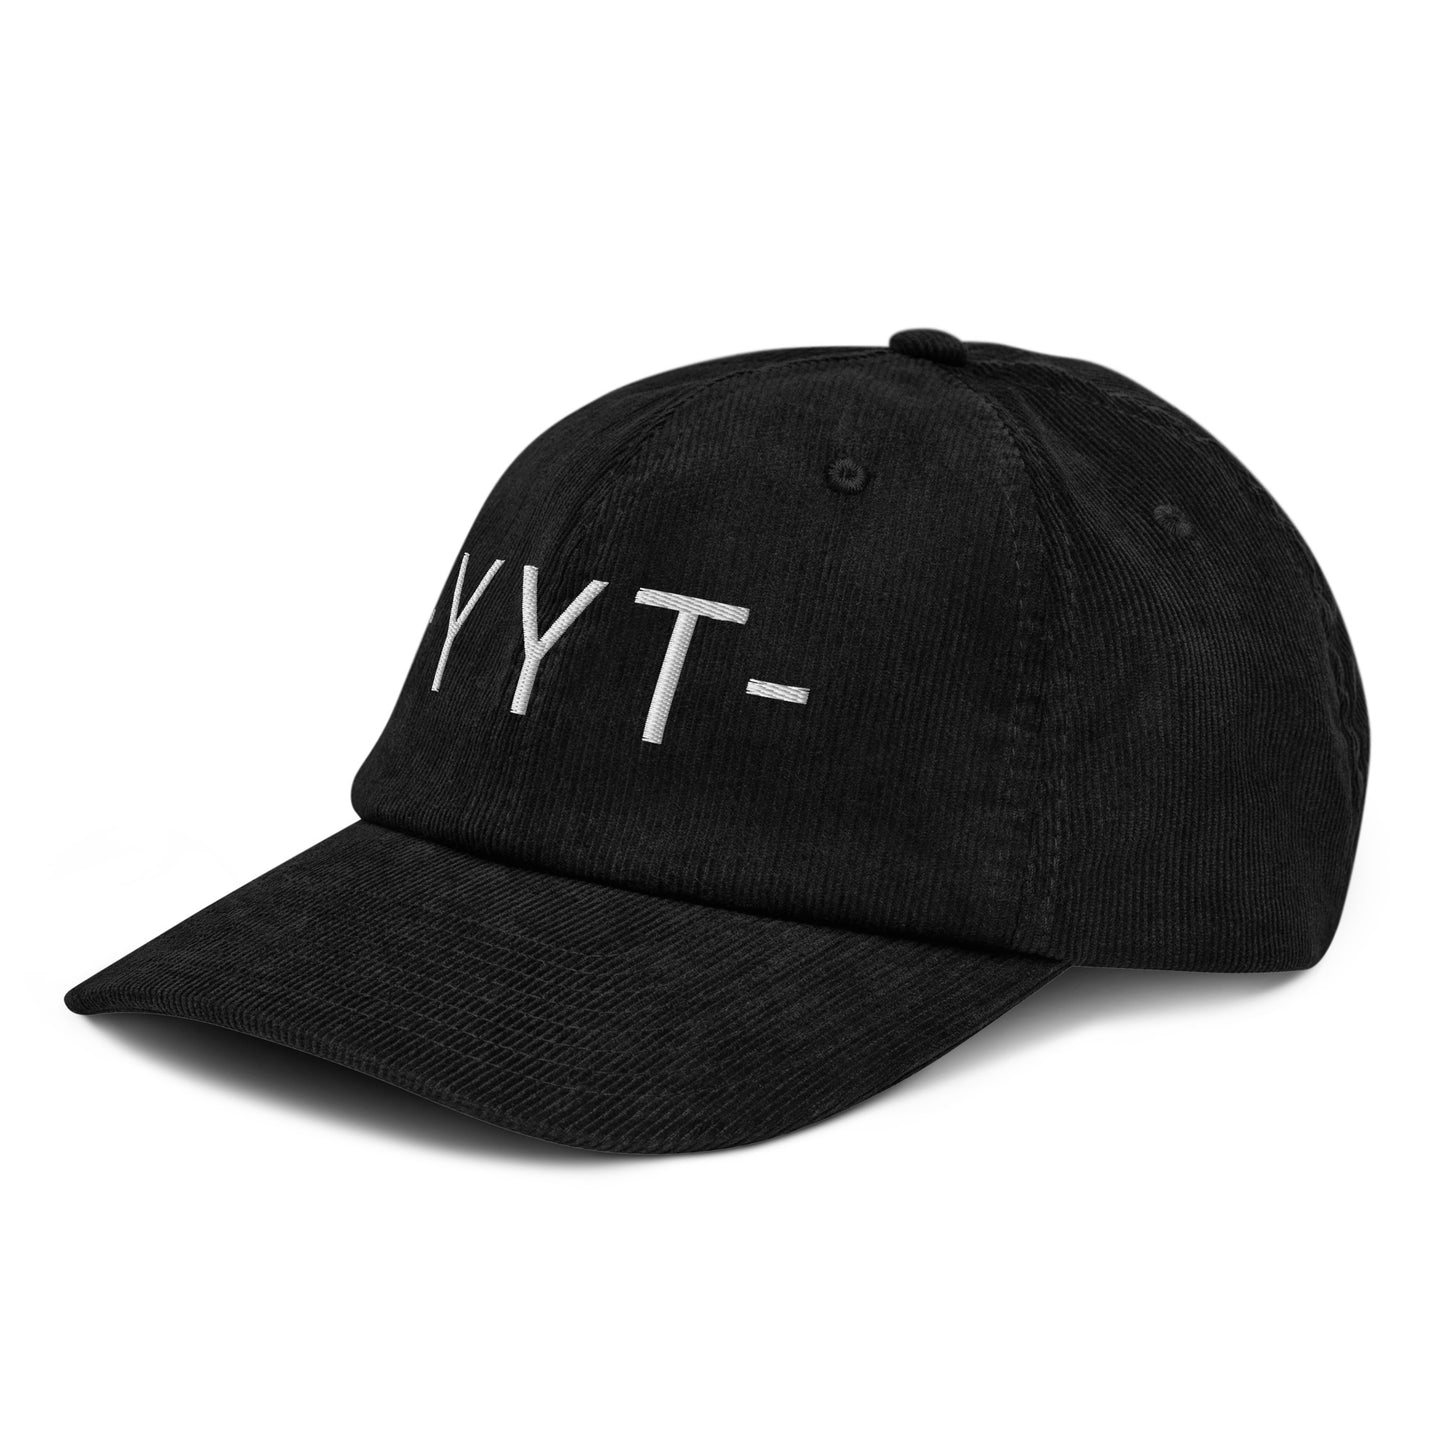 Souvenir Corduroy Hat - White • YYT St. John's • YHM Designs - Image 14